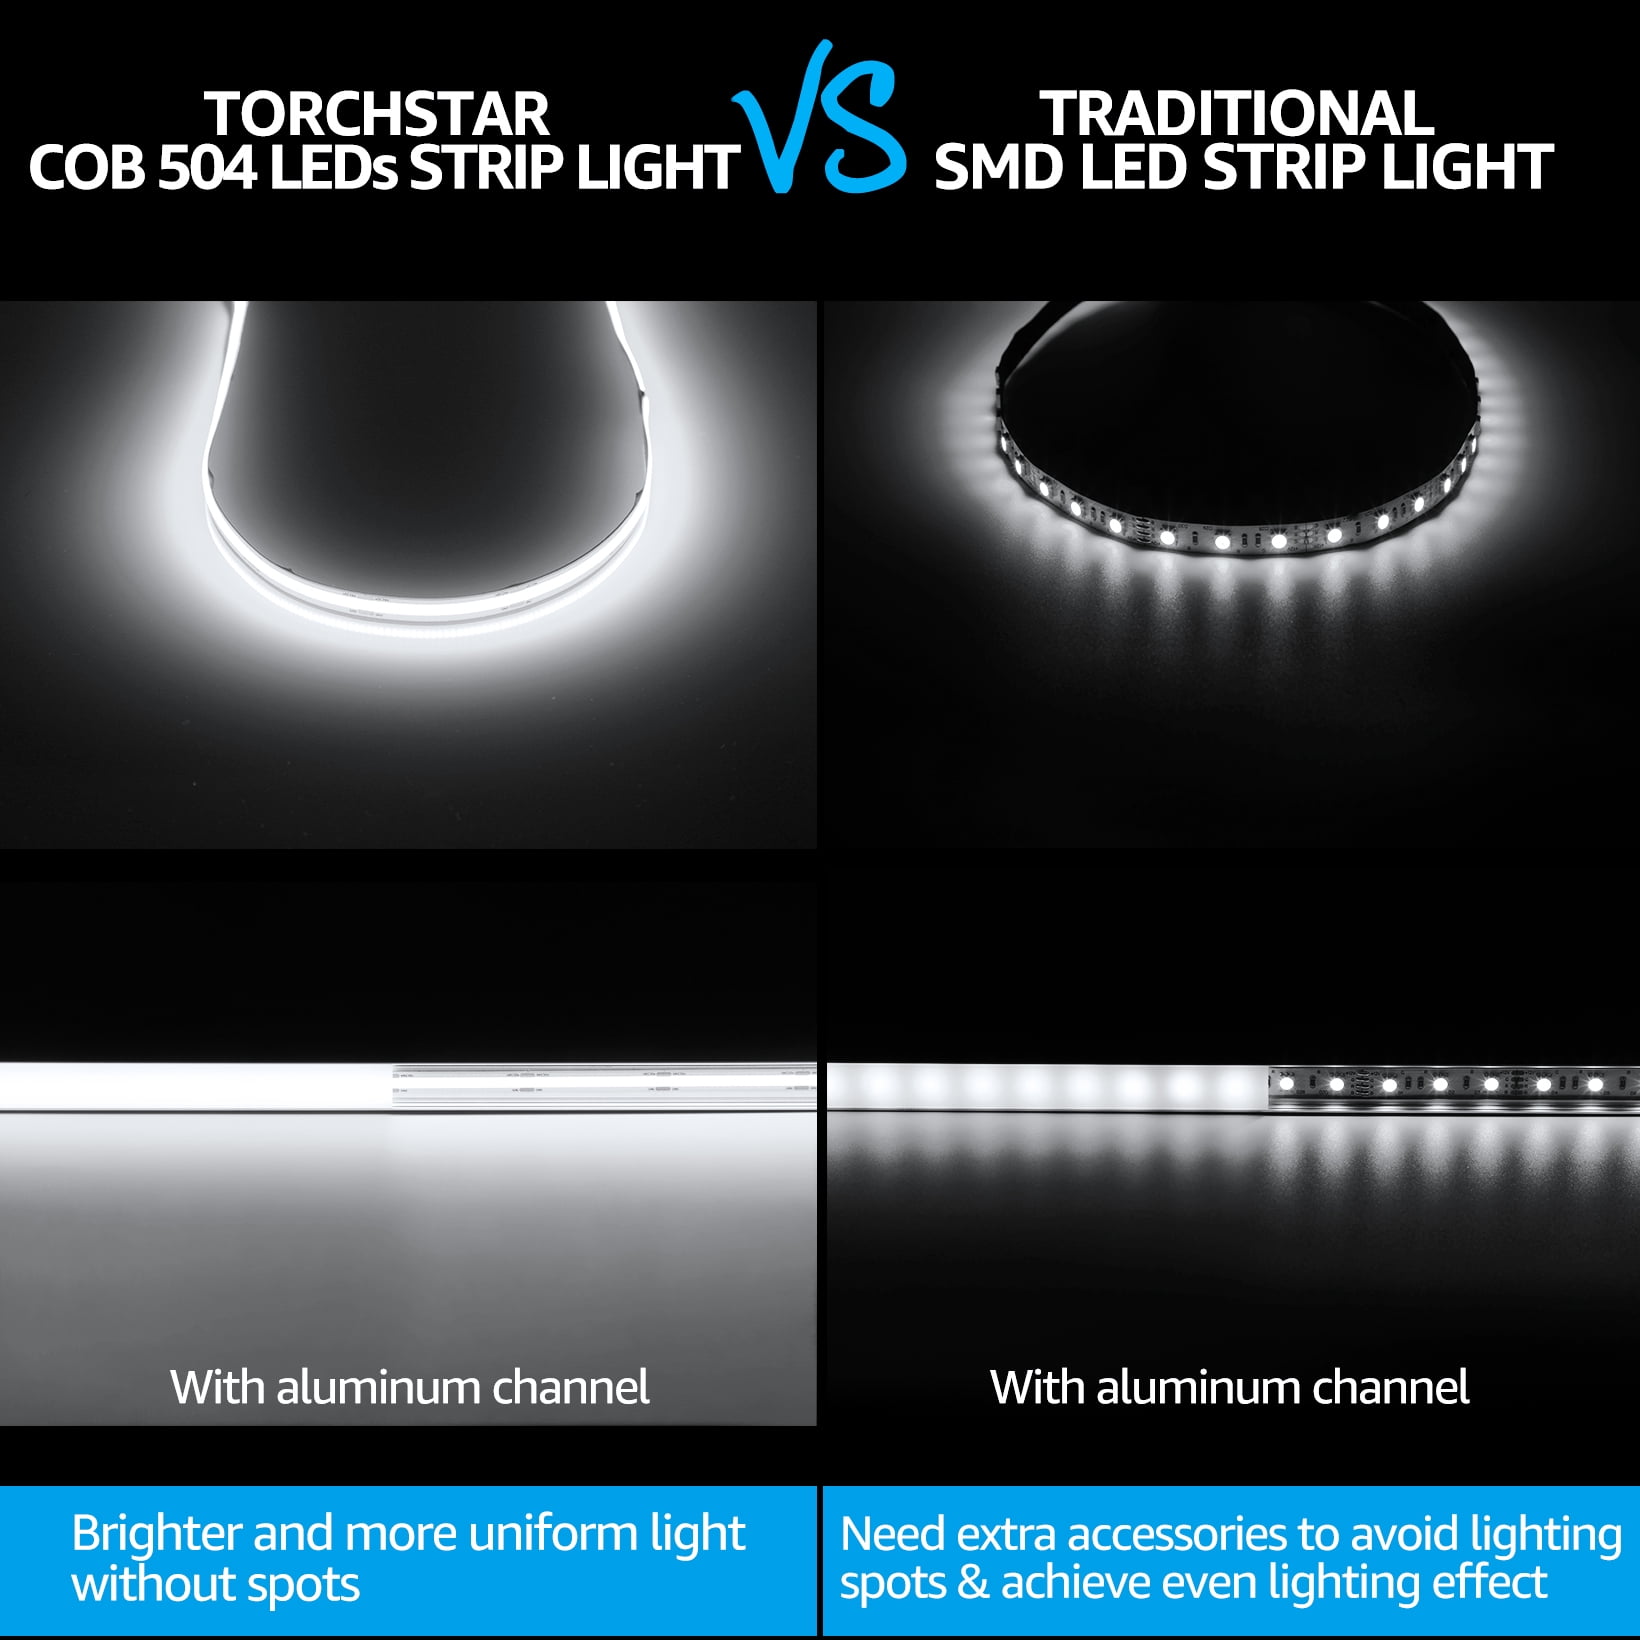 LED STRIP LIGHT SMD VS COB TYPE